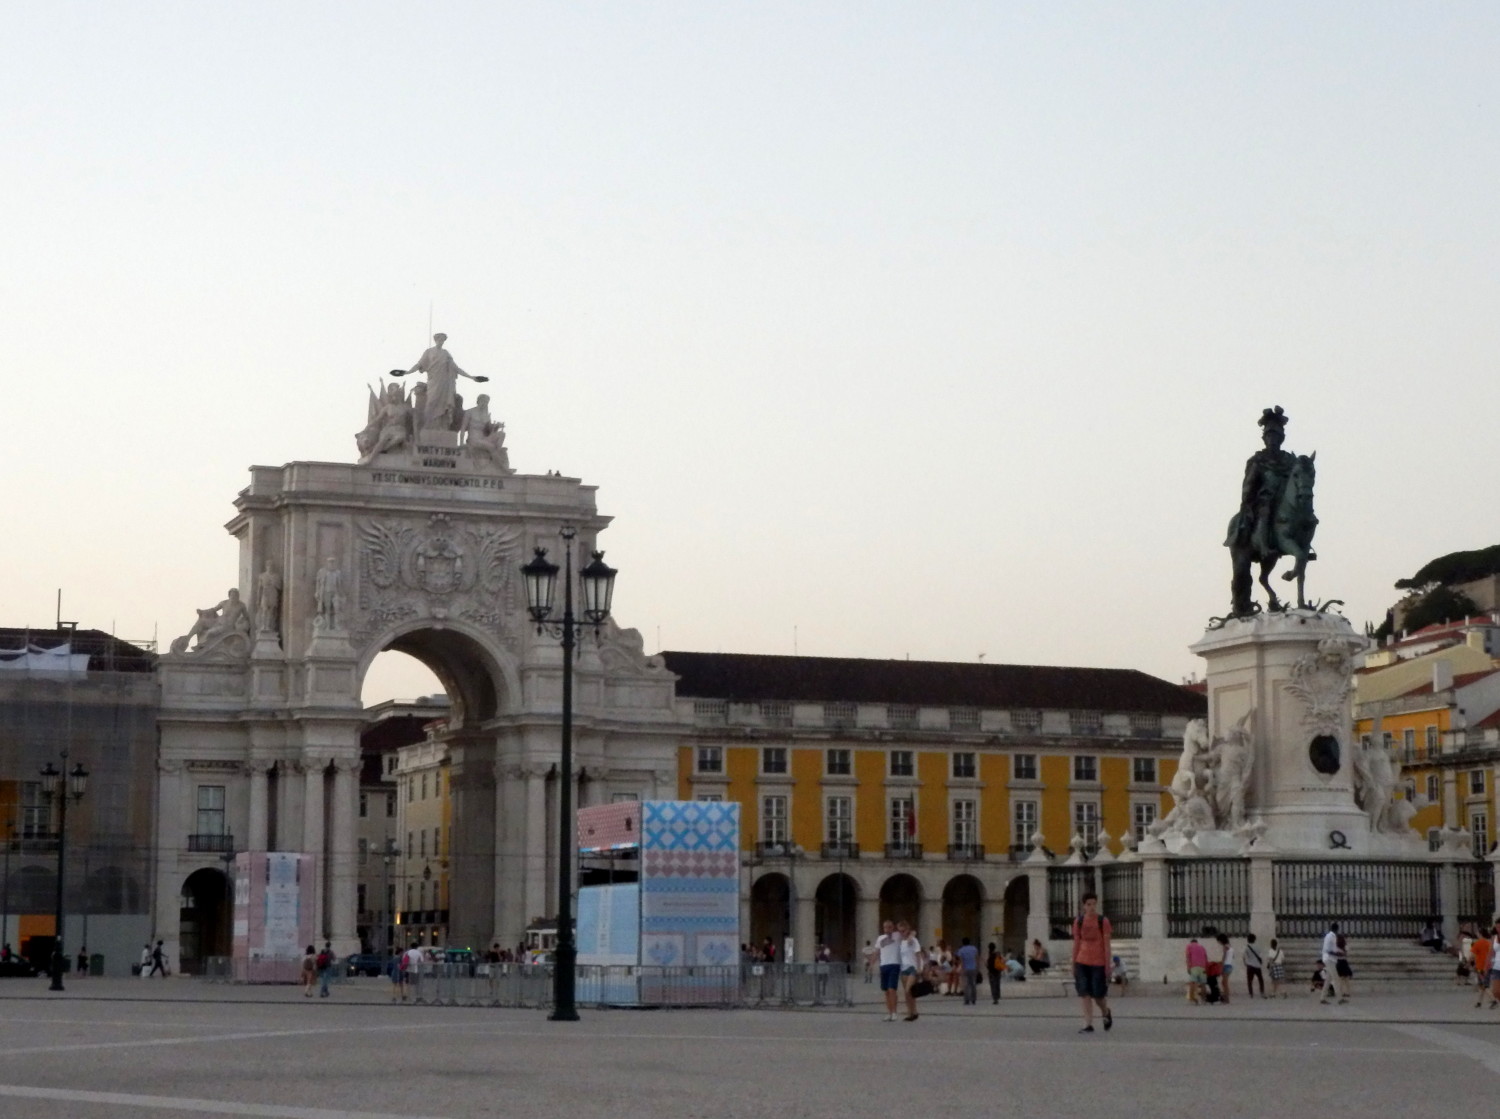 Arco da Rua Augusta y Plaza do Comercio en Lisboa (Portugal)